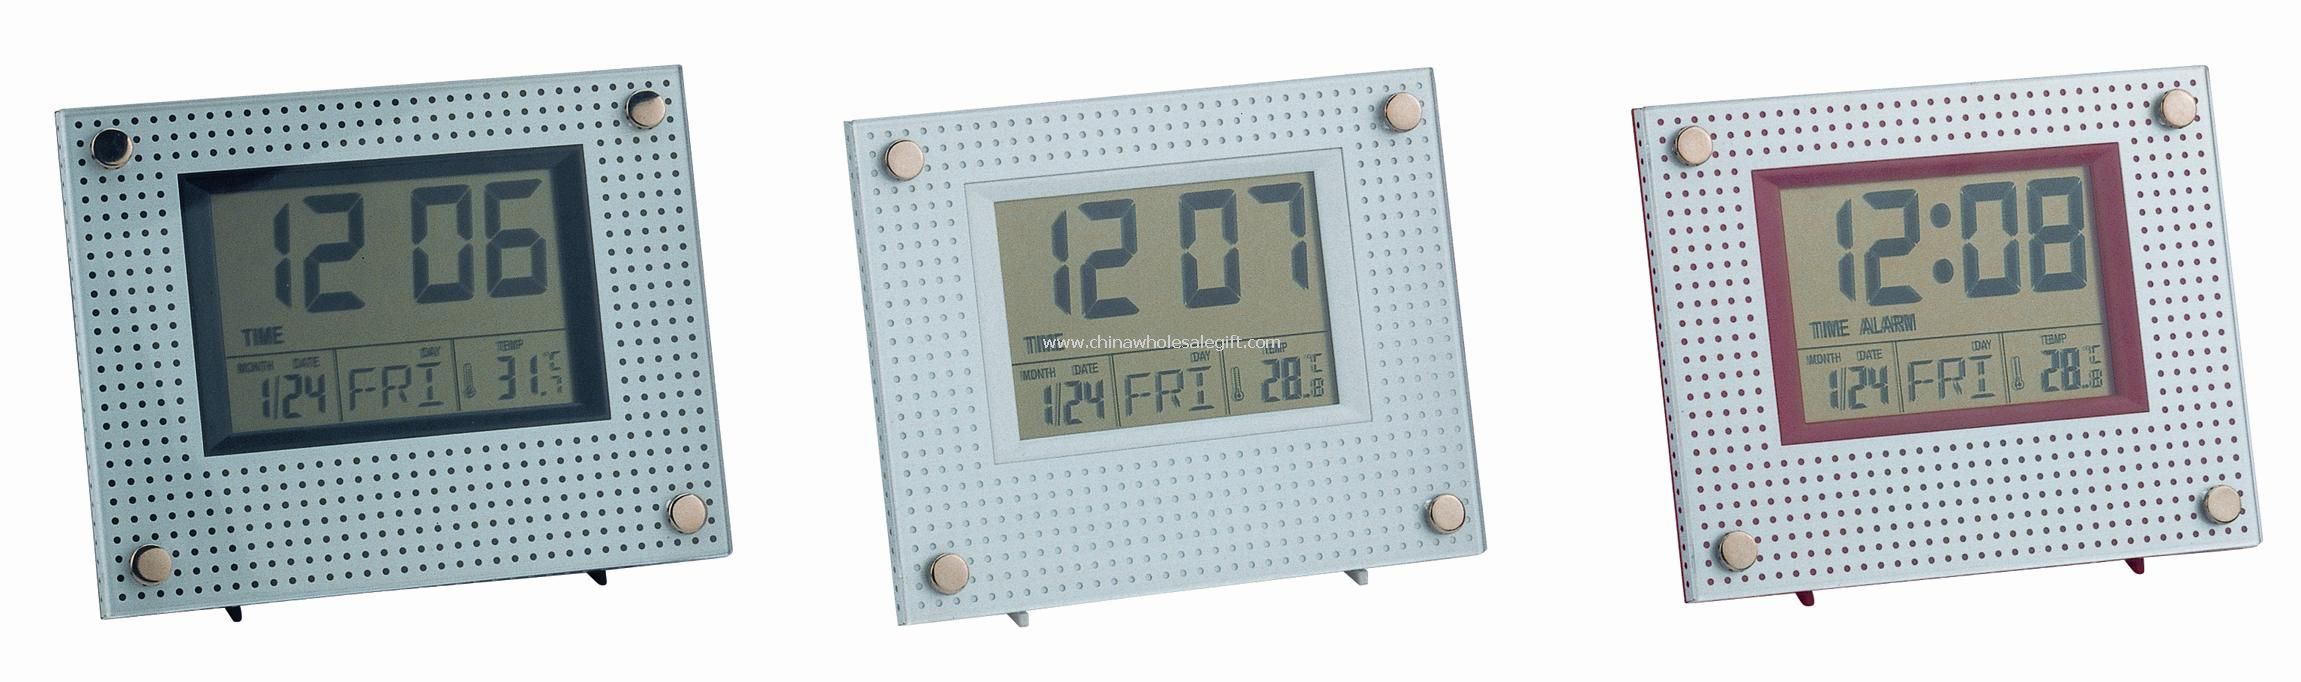 Exhibición grande del LCD calendario reloj